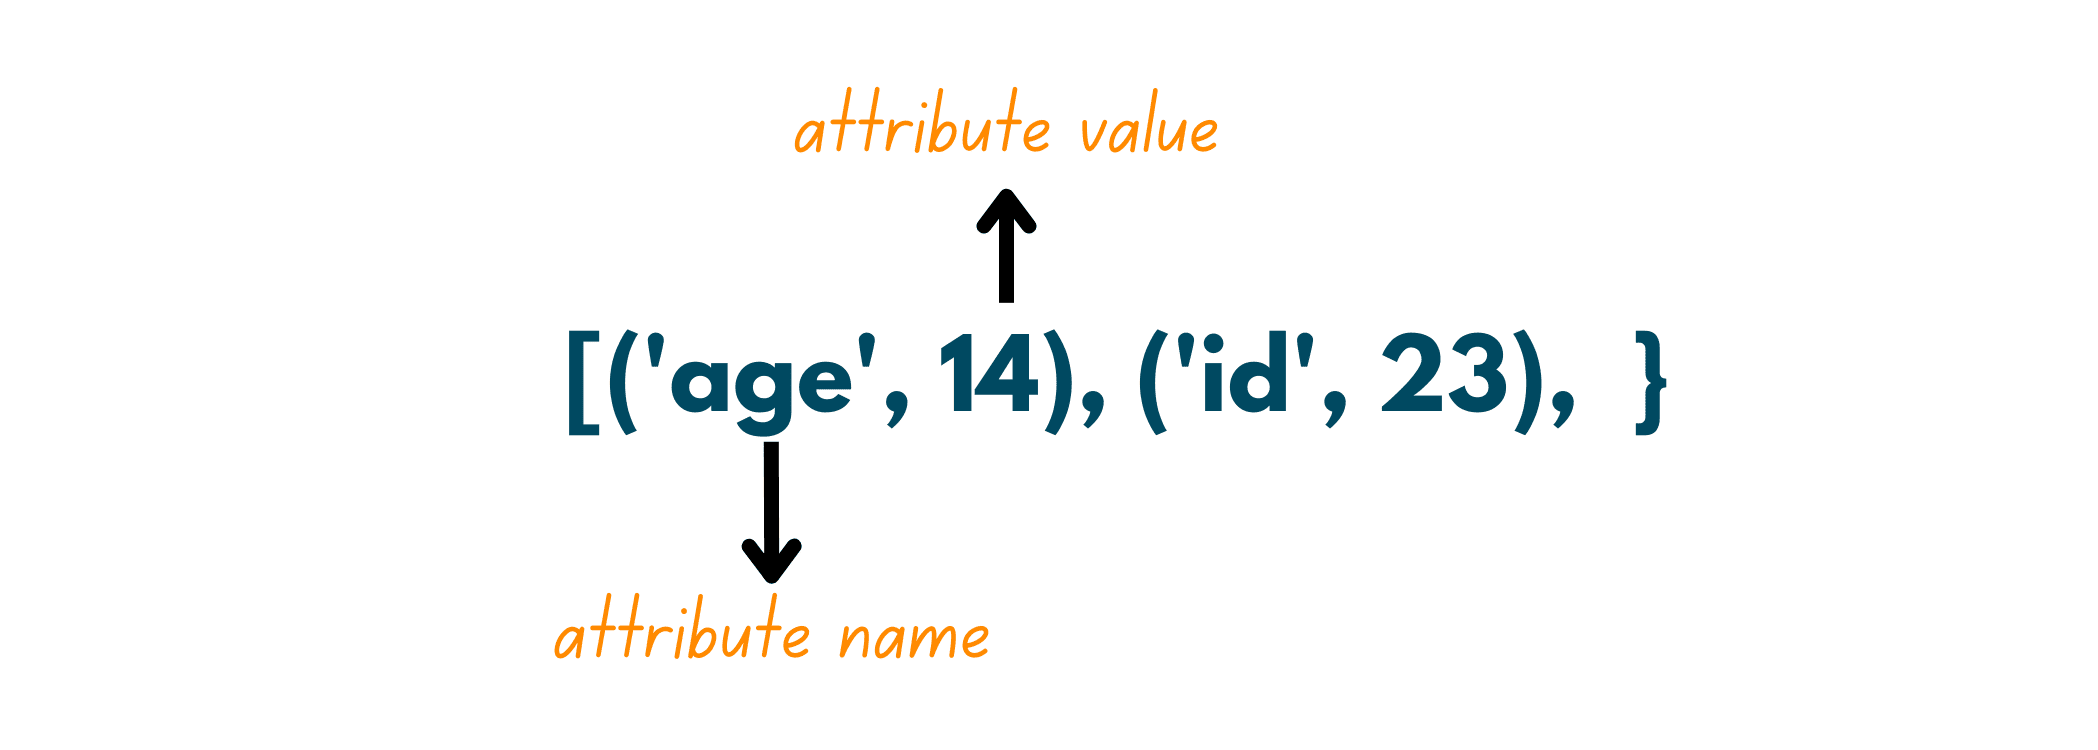 attribute value